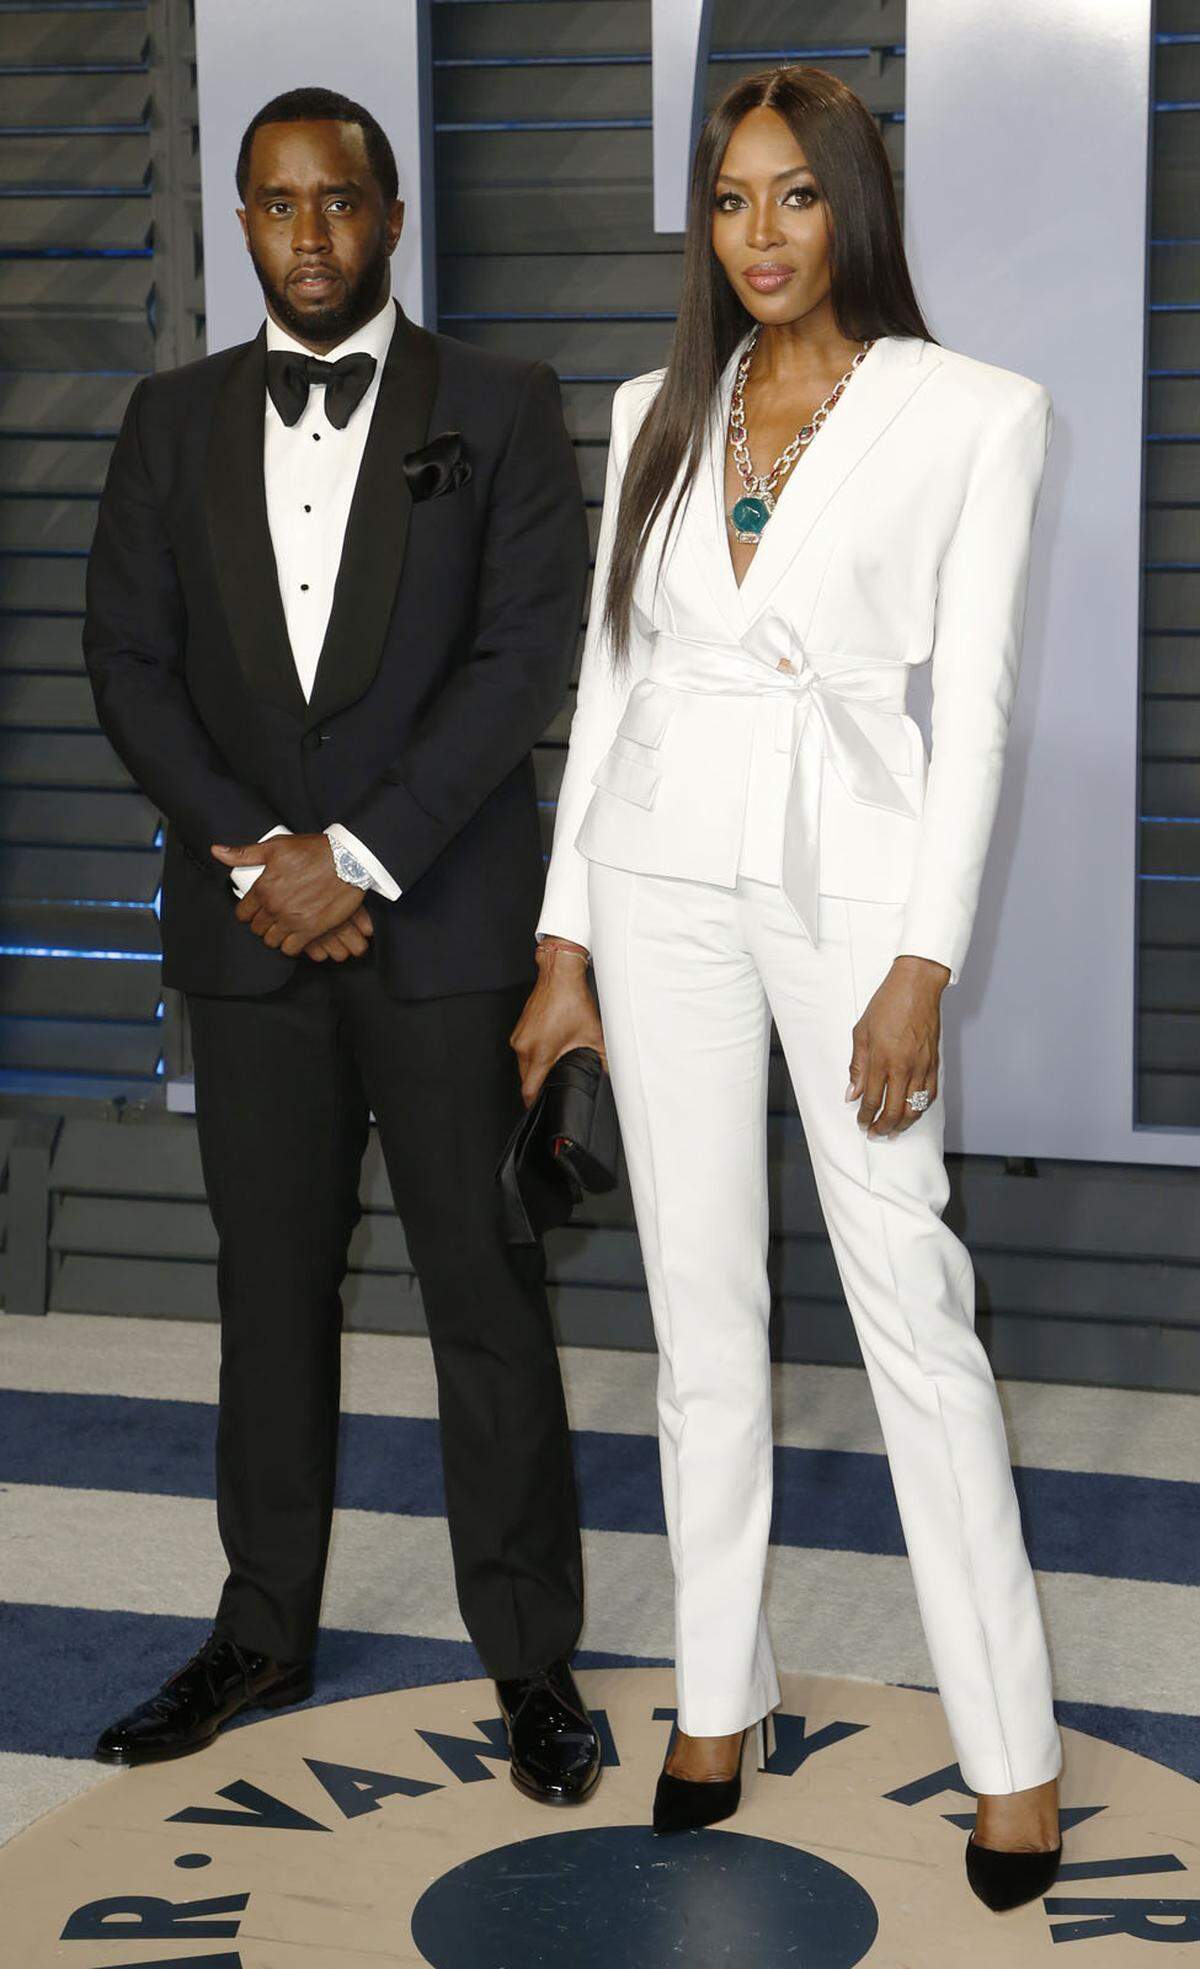 Ein neues Power-Duo? Rapper P. Diddy und Naomi Campbell kamen gemeinsam bei der Oscar-Party an.